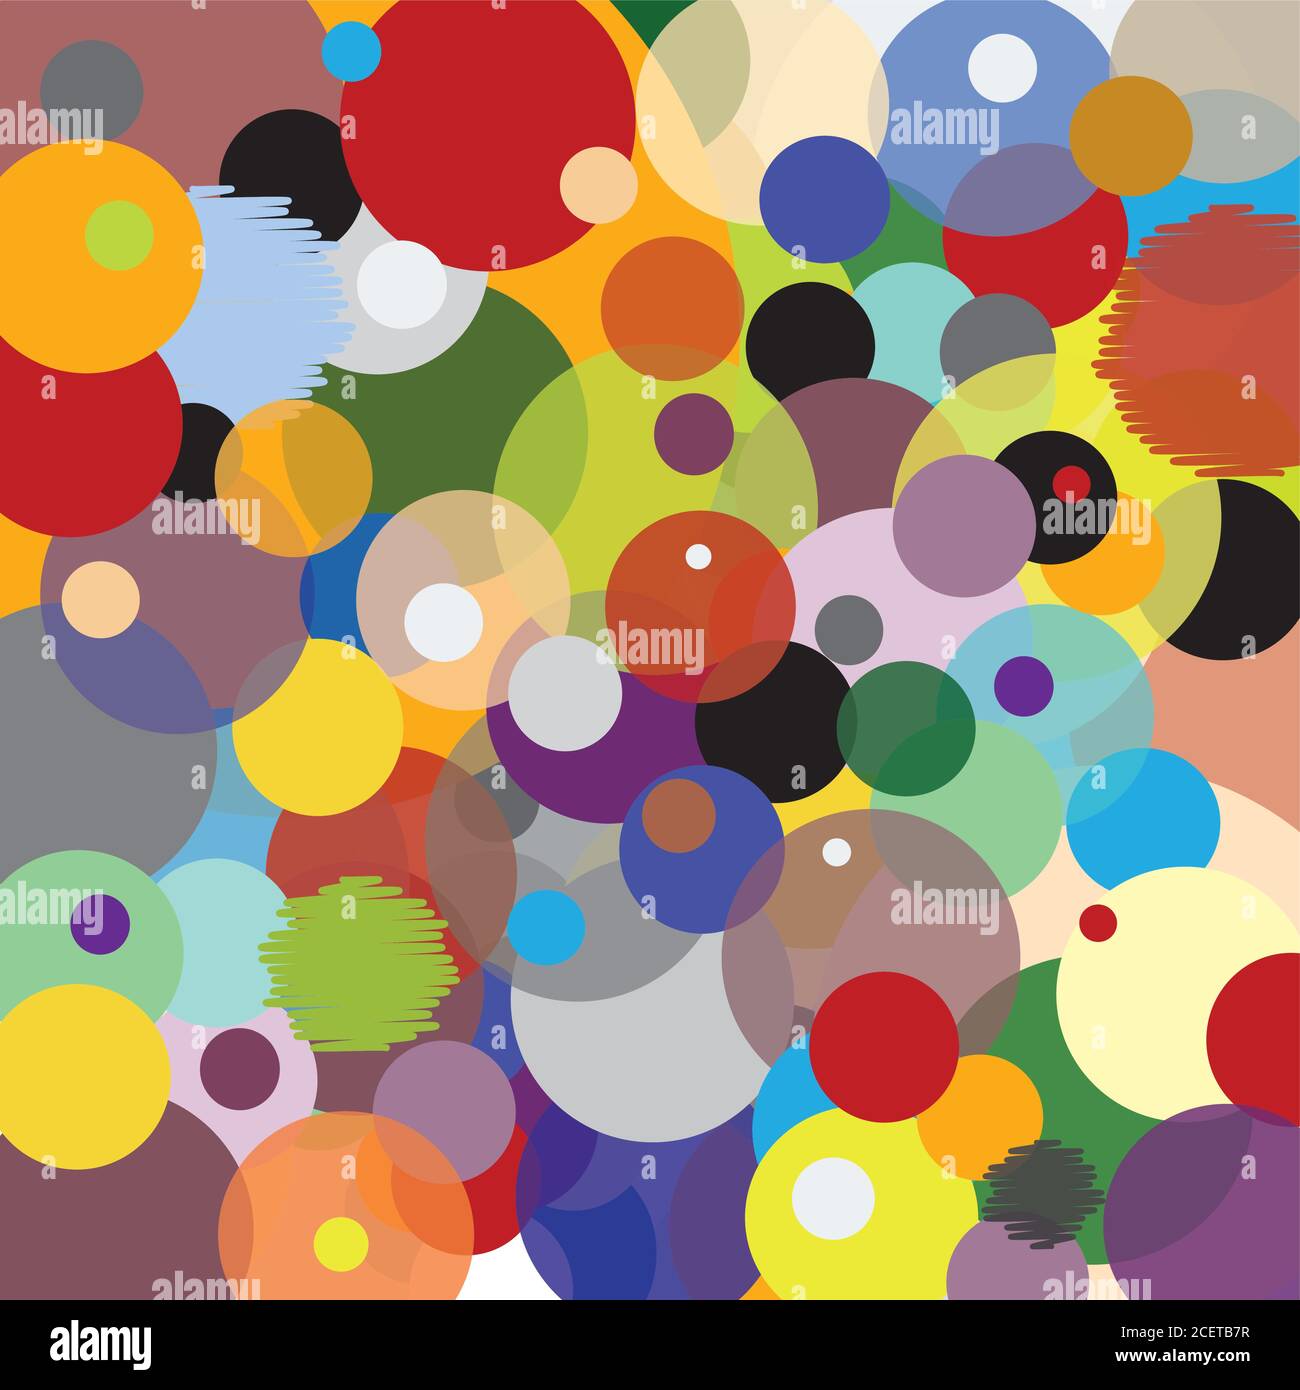 Motif avec cercles - multicolore - accumulation joyeuse Illustration de Vecteur